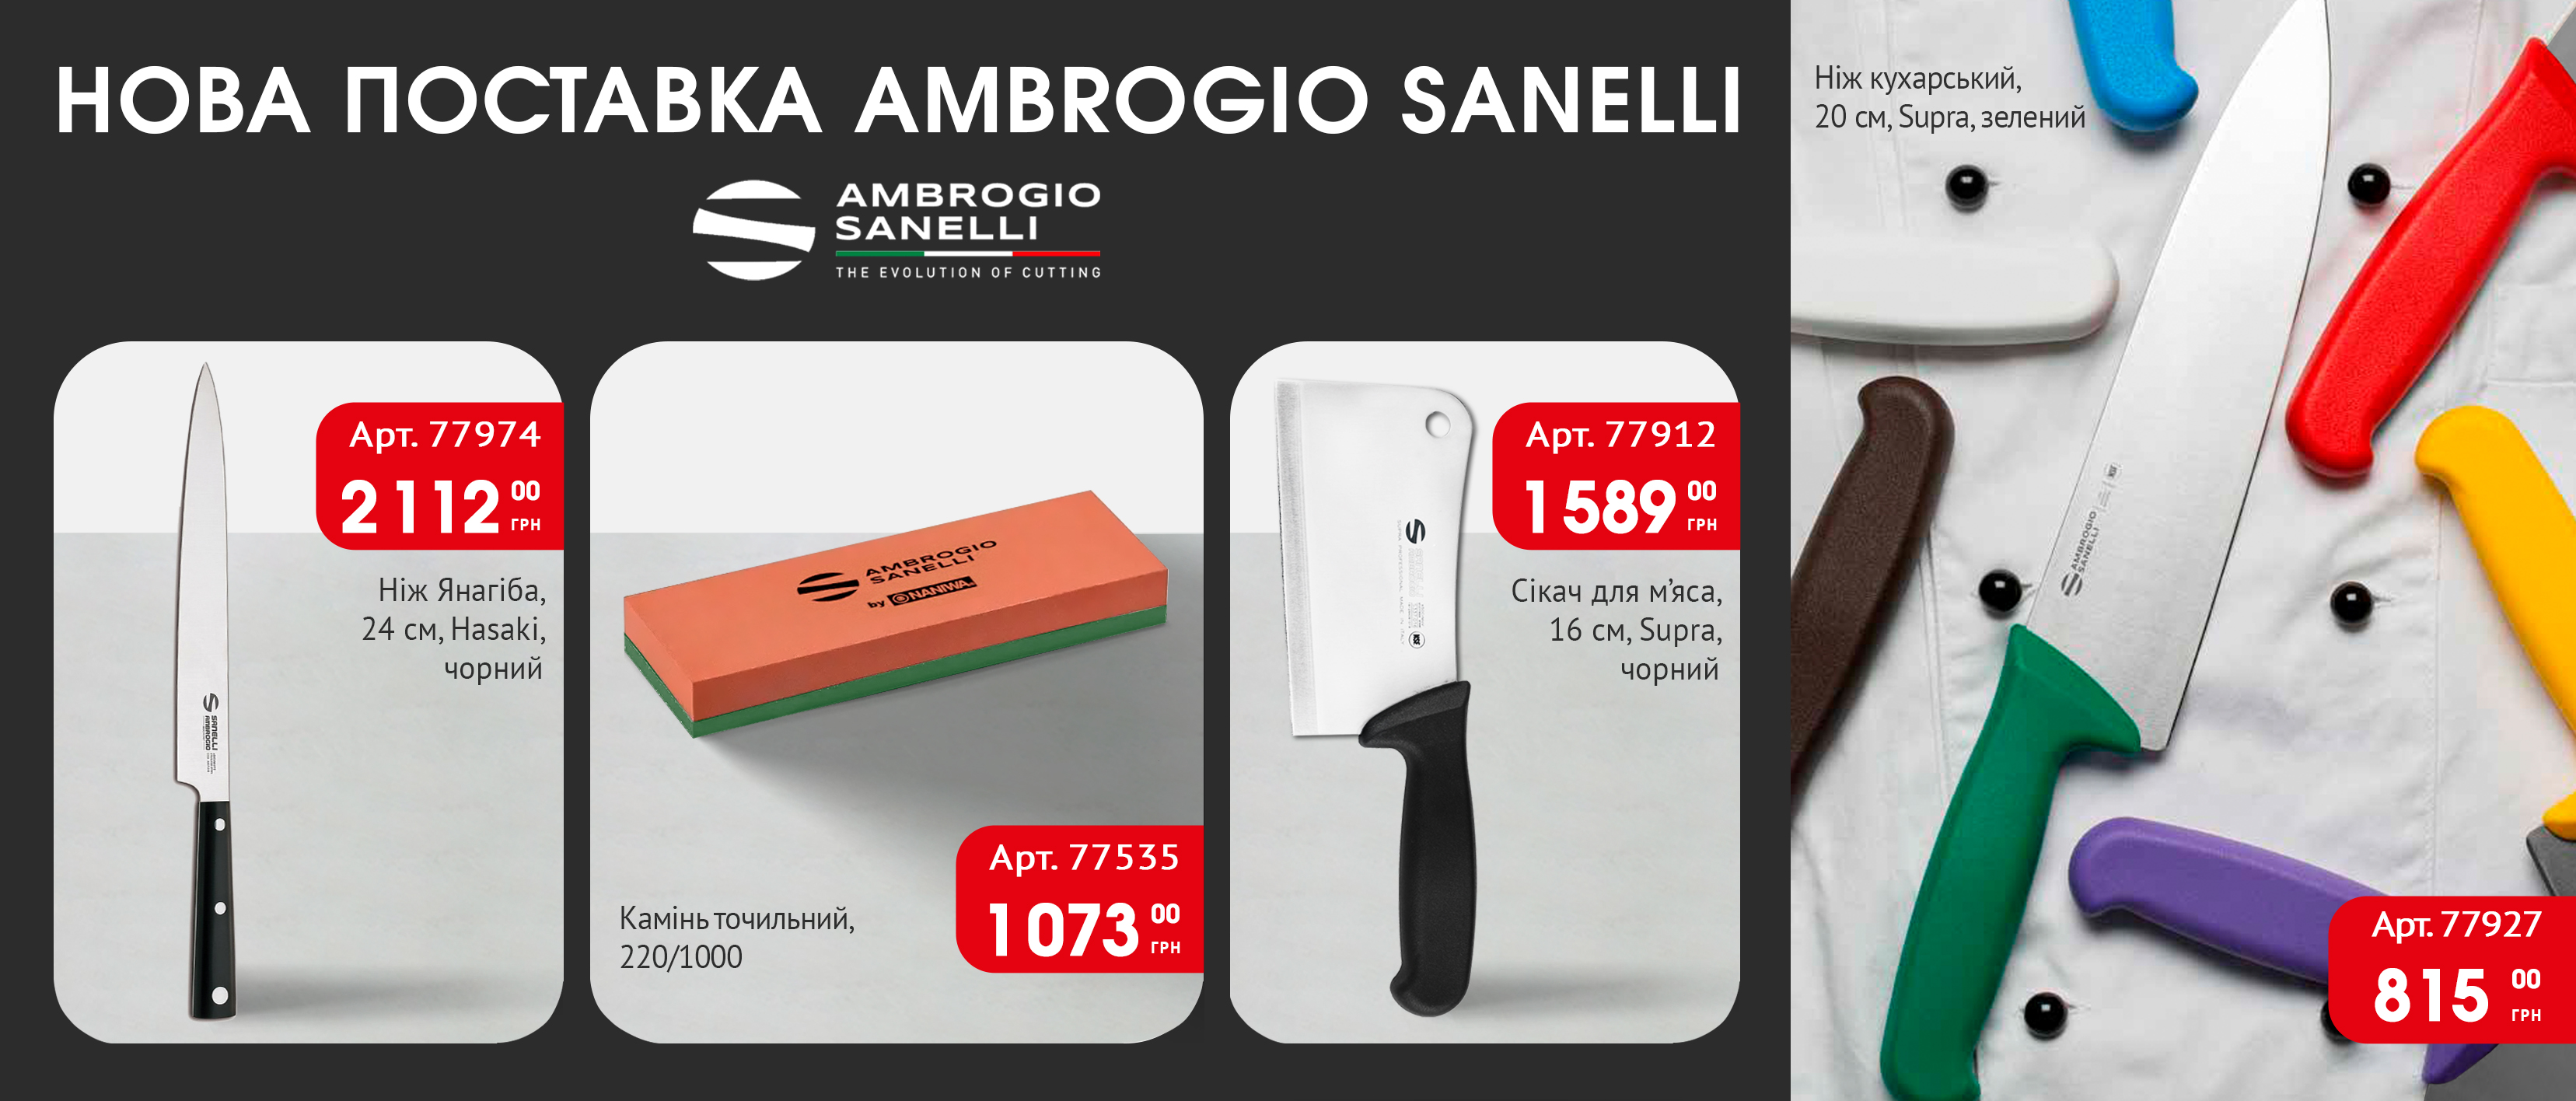 Нова поставка товарів Ambrogio Sanelli